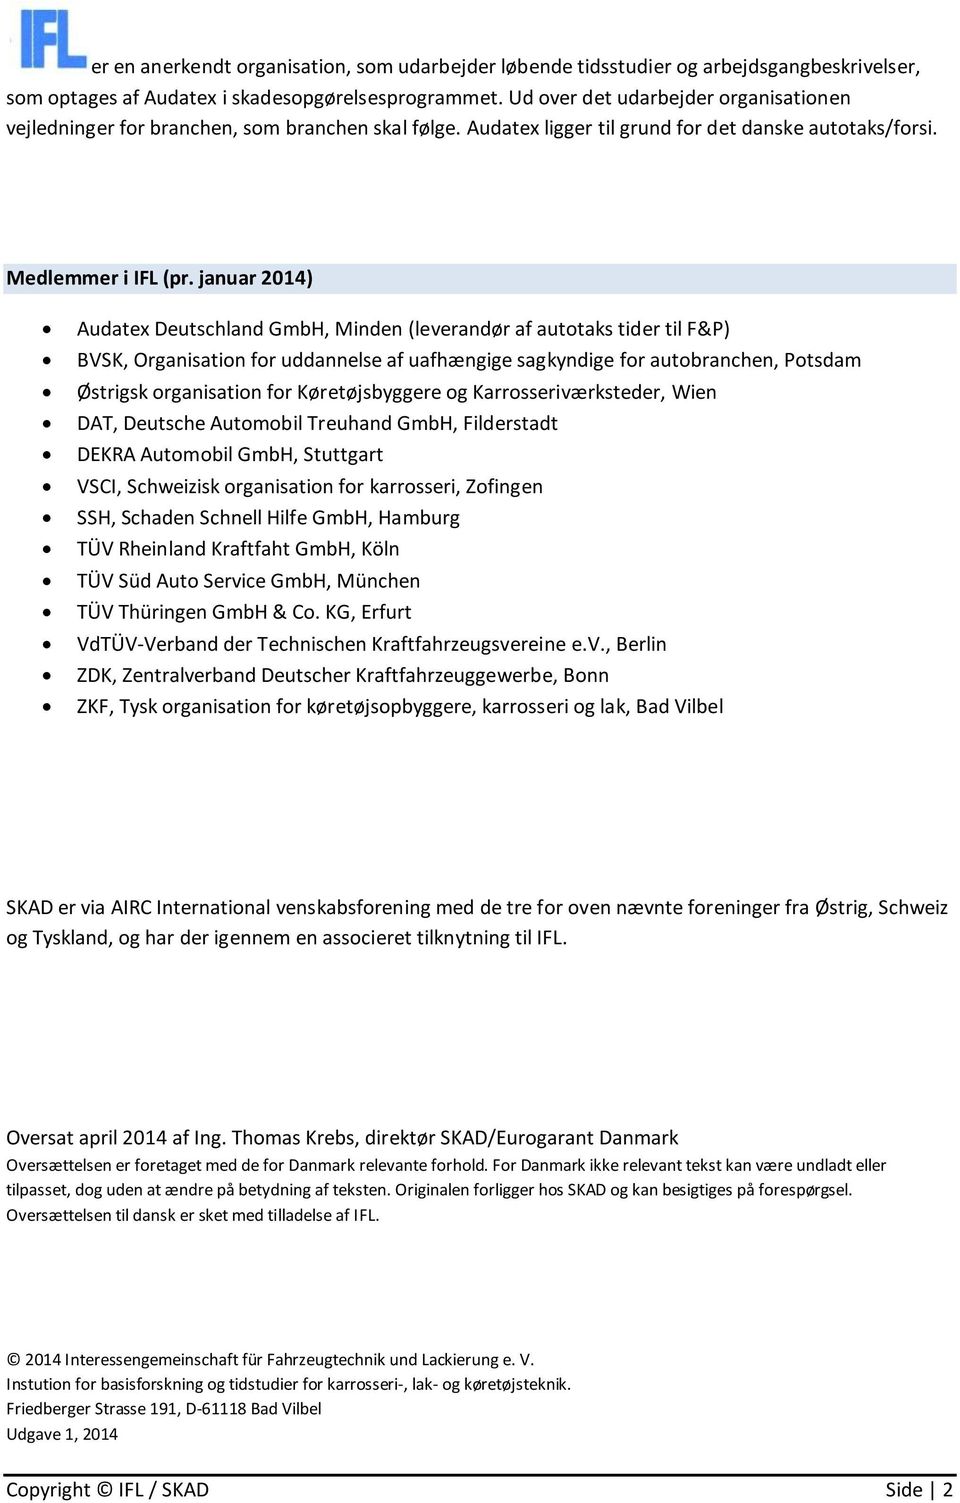 januar 2014) Audatex Deutschland GmbH, Minden (leverandør af autotaks tider til F&P) BVSK, Organisation for uddannelse af uafhængige sagkyndige for autobranchen, Potsdam Østrigsk organisation for